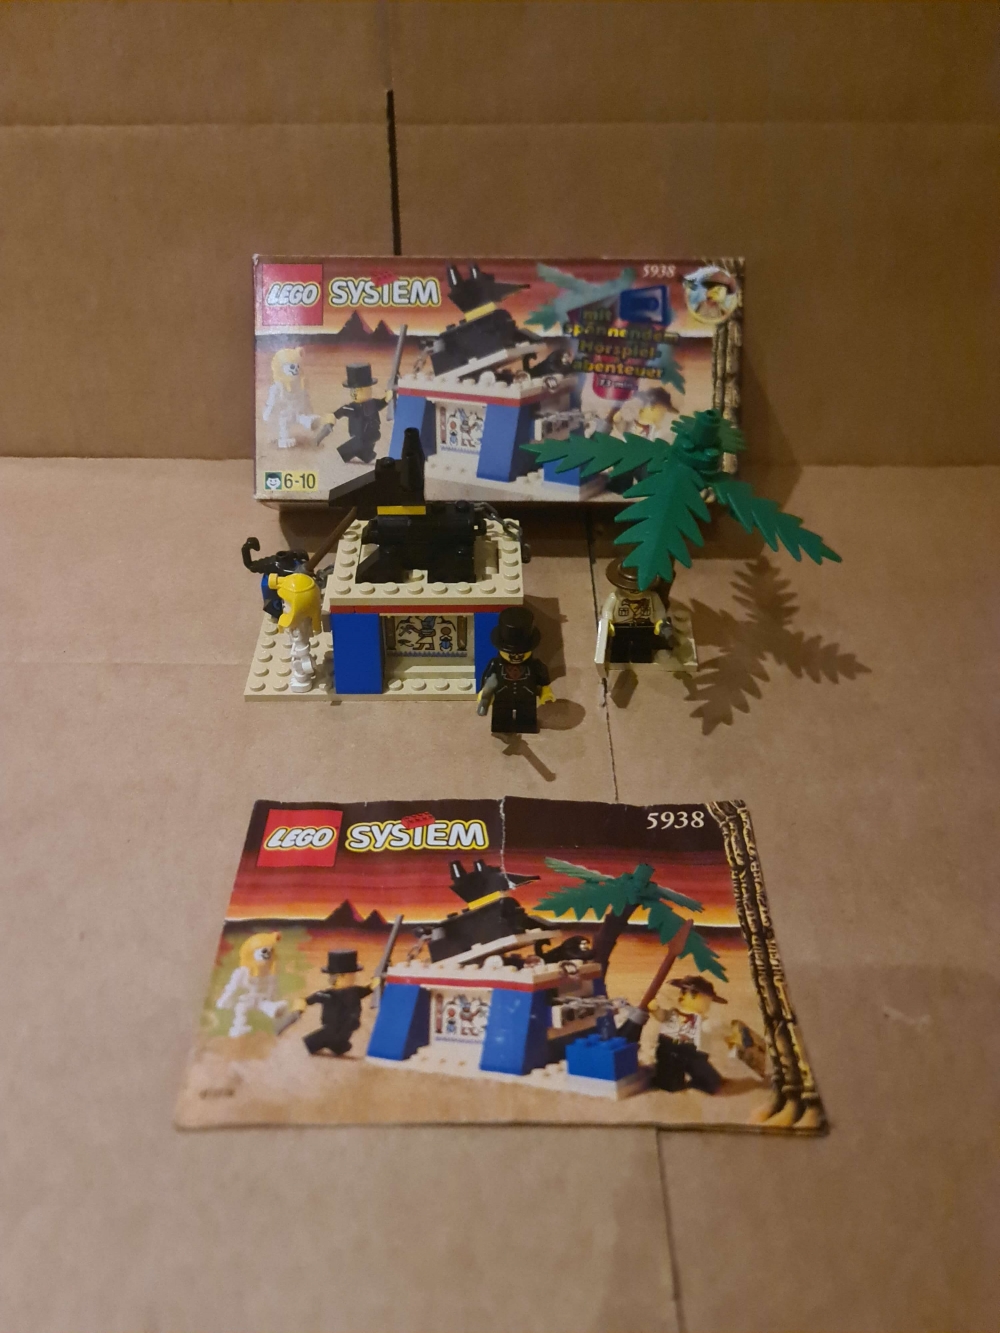 Sett 5938 fra Lego Adventurers: Desert serien.
Meget pent sett.
Komplett med manual og fin eske.